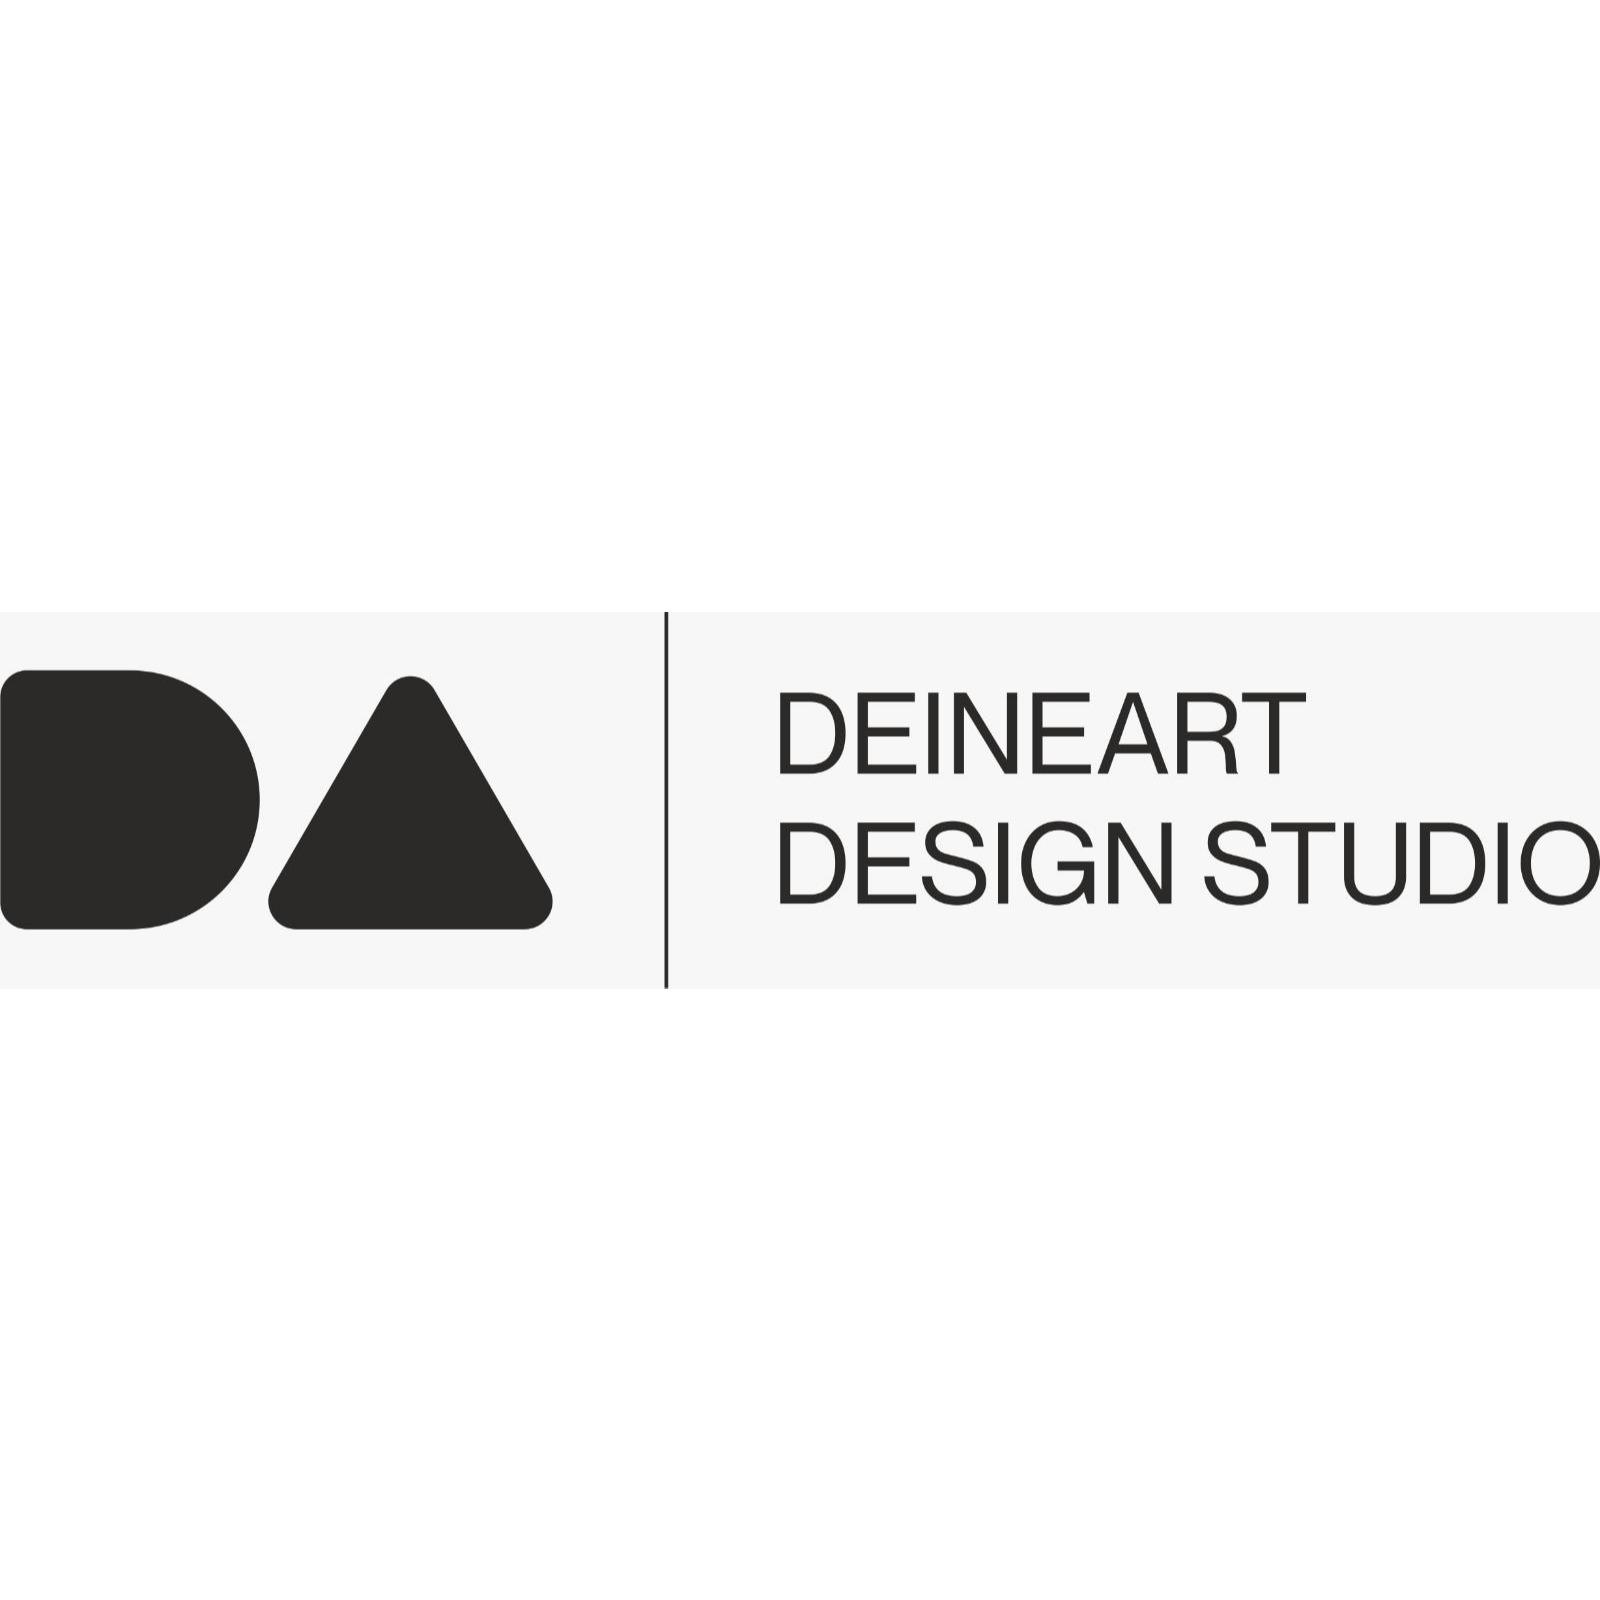 DEINEART Design Studio in Hanau - Logo